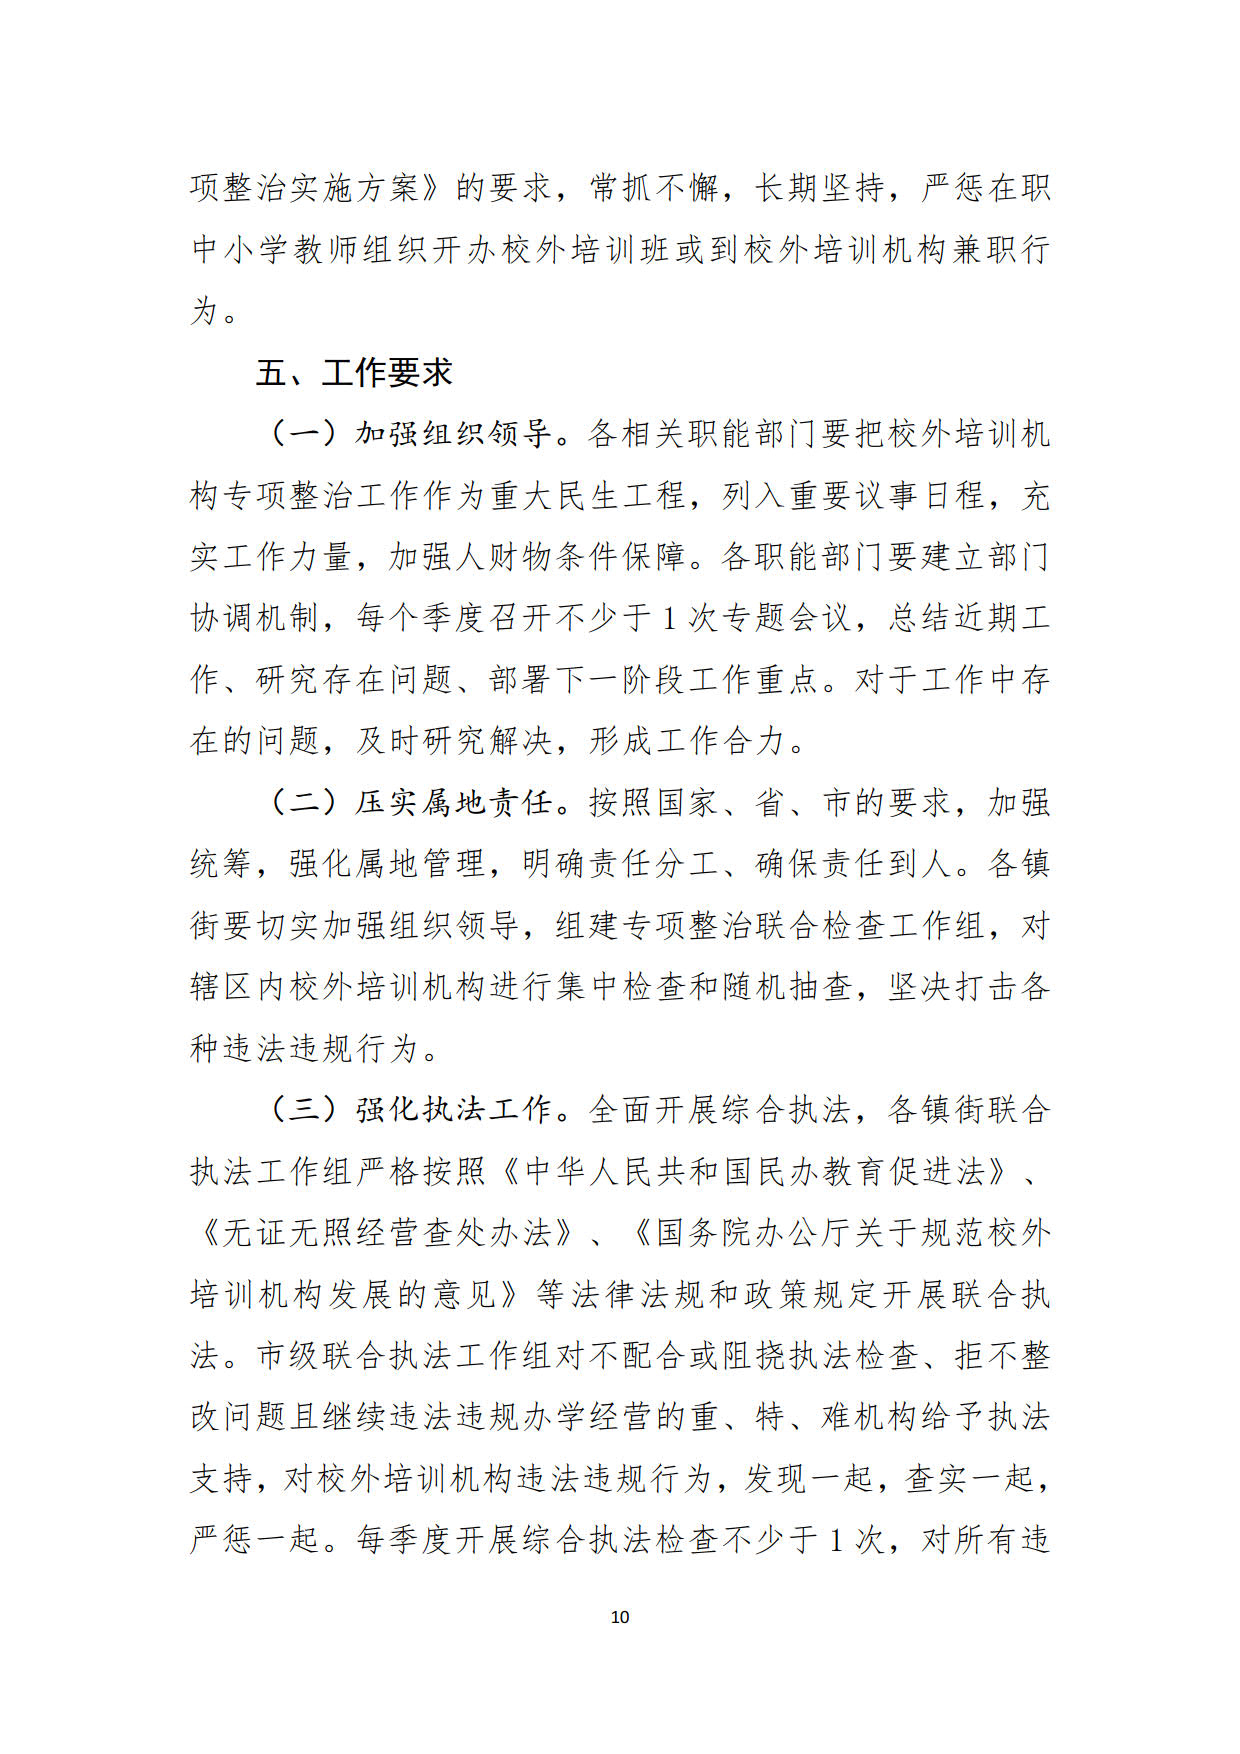 （20211213）兴宁市校外培训机构专项整治方案（征求意见稿）_10.jpg